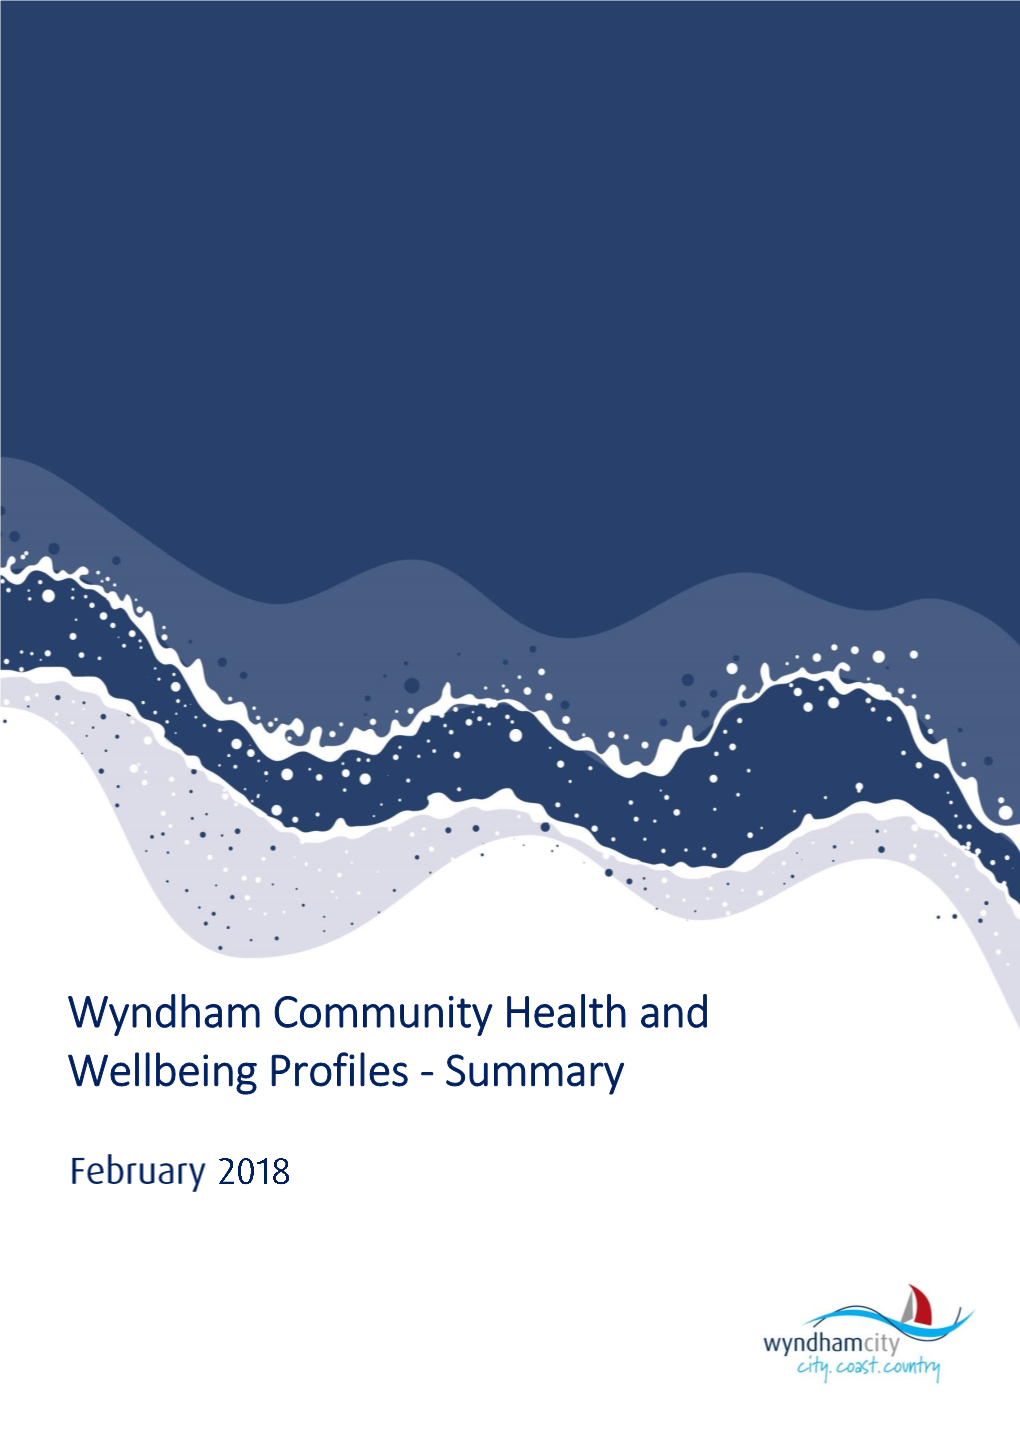 Wyndham Community Health and Wellbeing Profiles - Summary